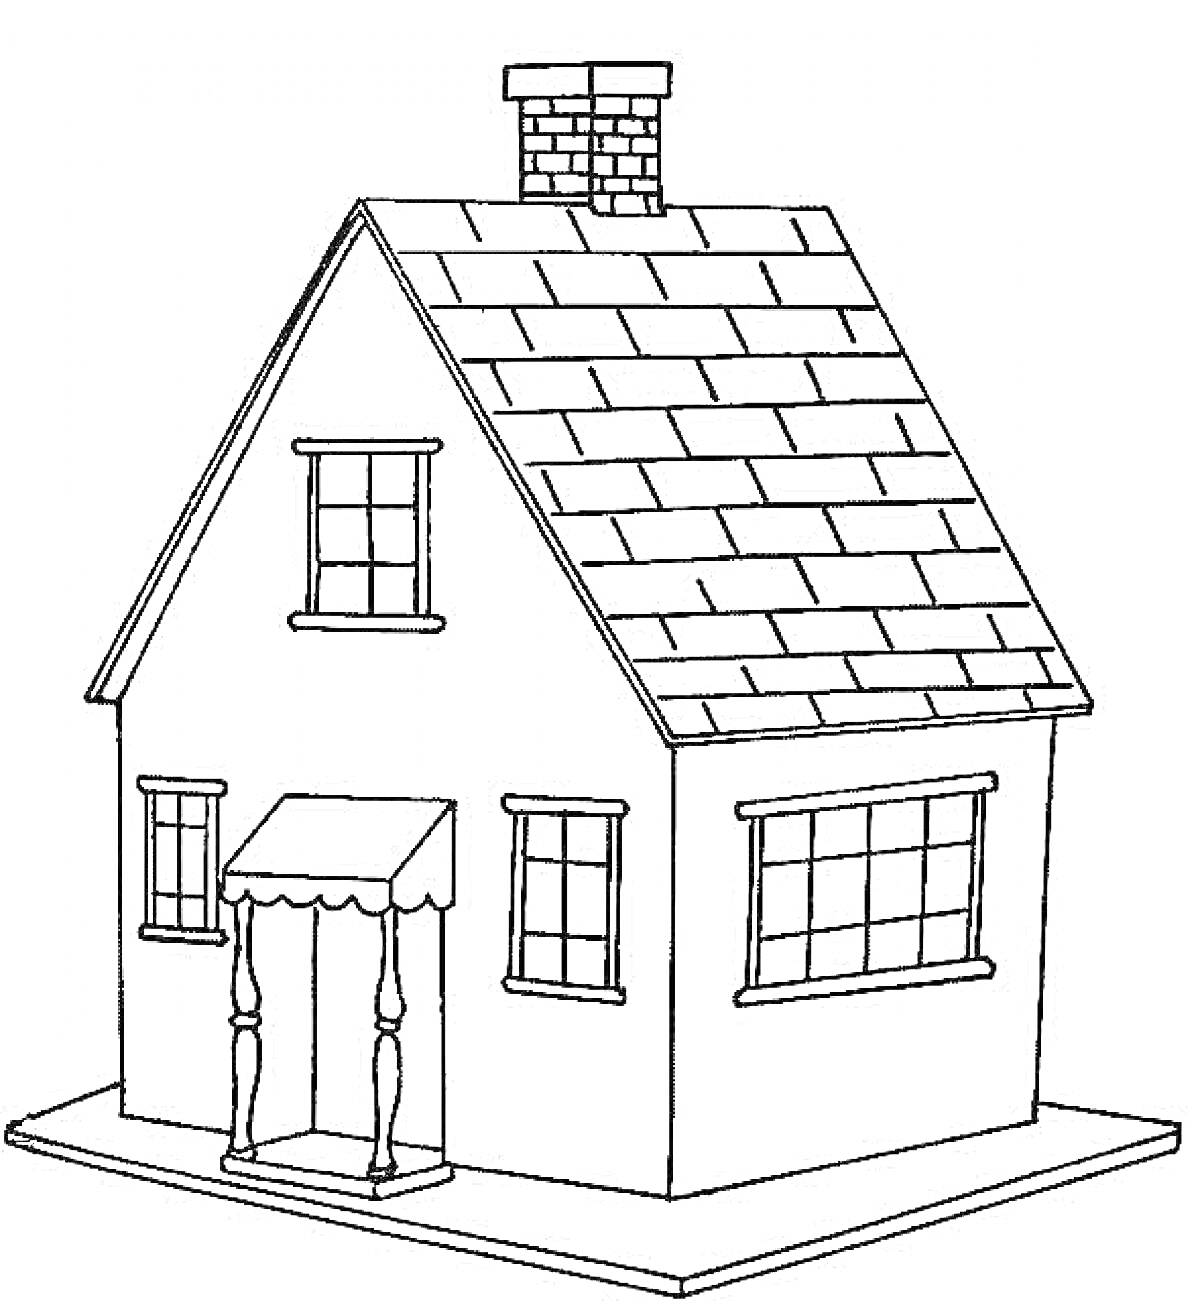 Раскраска Дом с портиком, окнами, дверью, крышей с черепицей и трубой